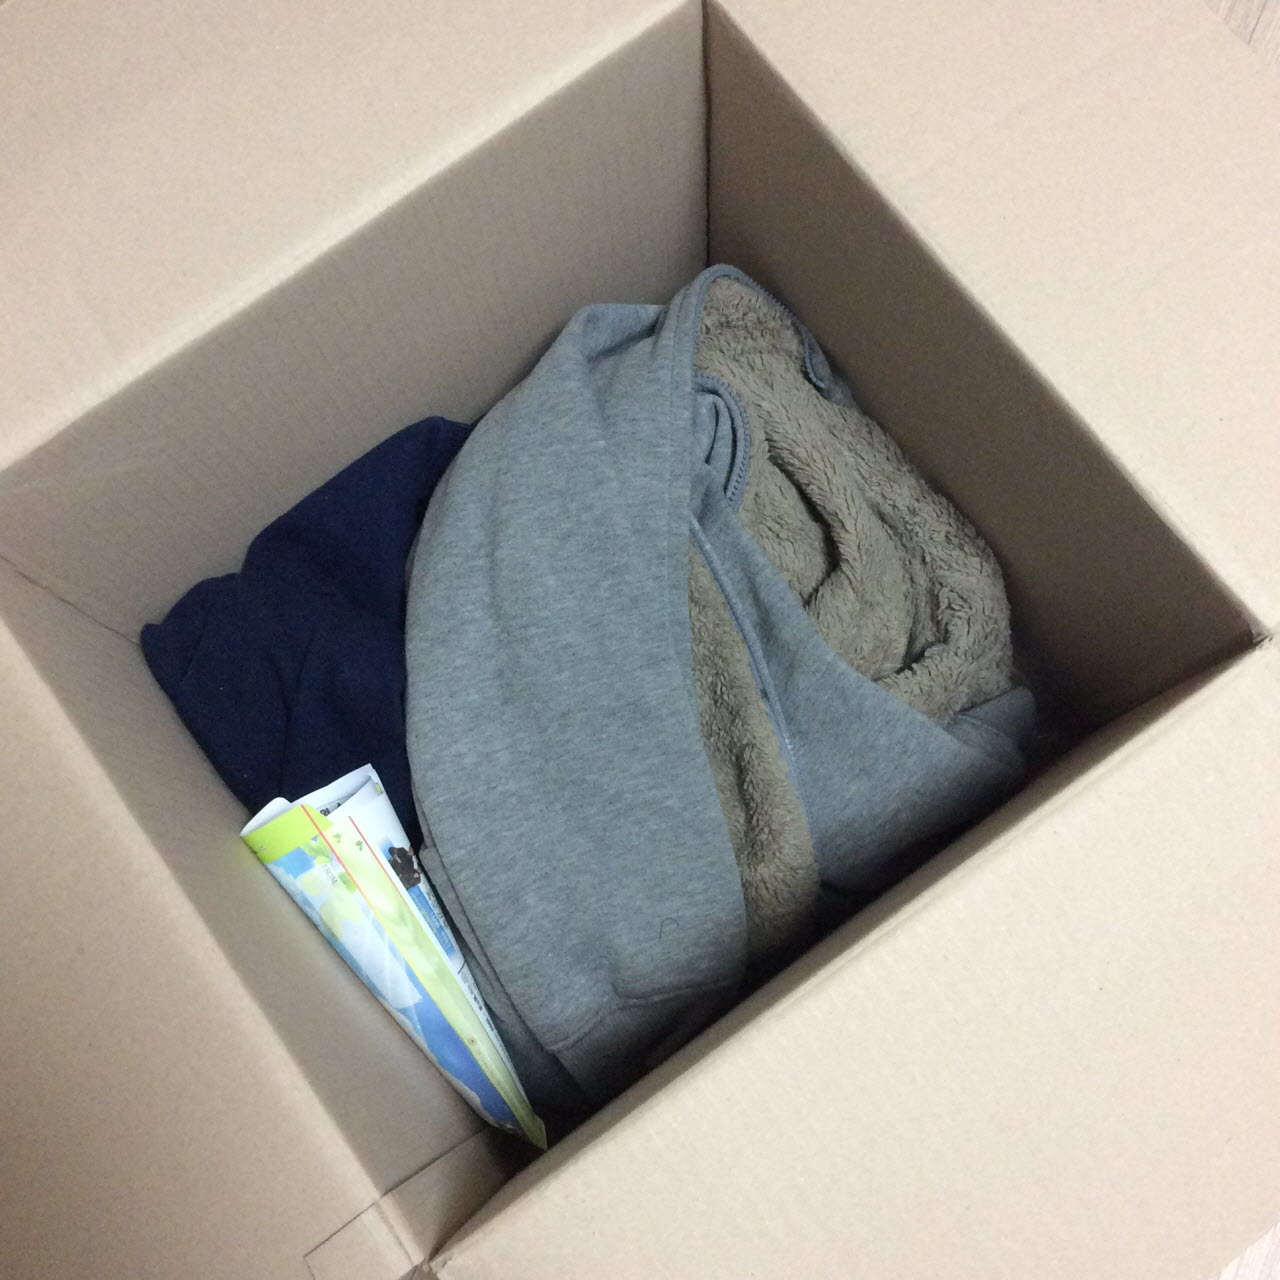 박스 속에는 아들이 입고 들어간 옷가지와 편지가 담겼다. 